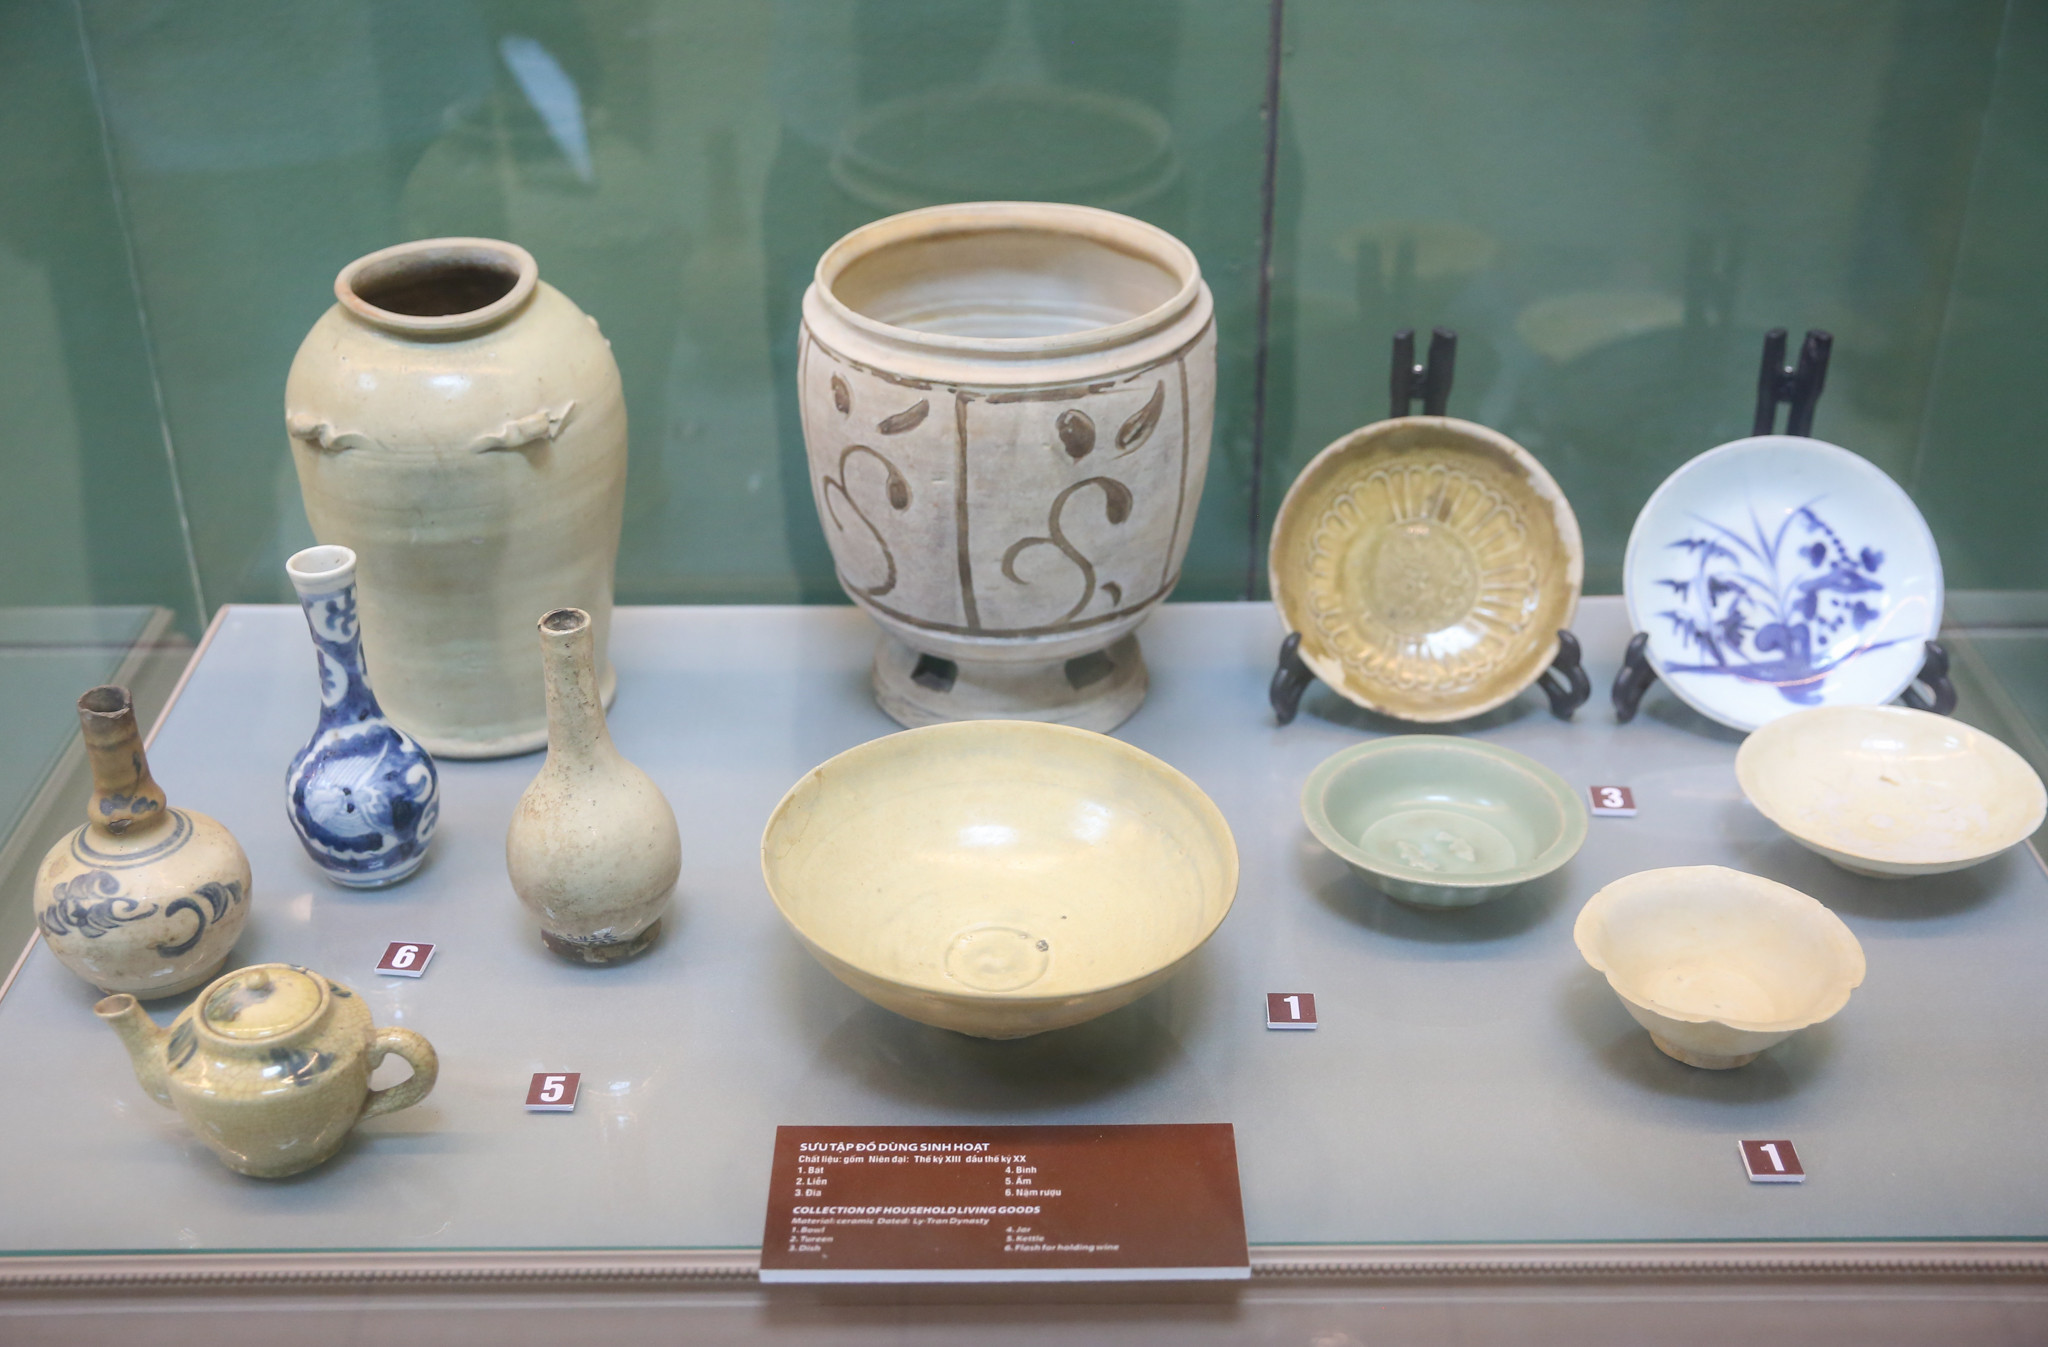 Bộ sưu tập đồ dùng sinh hoạt bằng gốm sứ niên đại từ thế kỷ XVIII - đầu thế kỷ XX nói lên đời sống thẩm mỹ của cư dân xứ Nghệ trong giai đoạn lịch sử này. Ảnh: Đức Anh